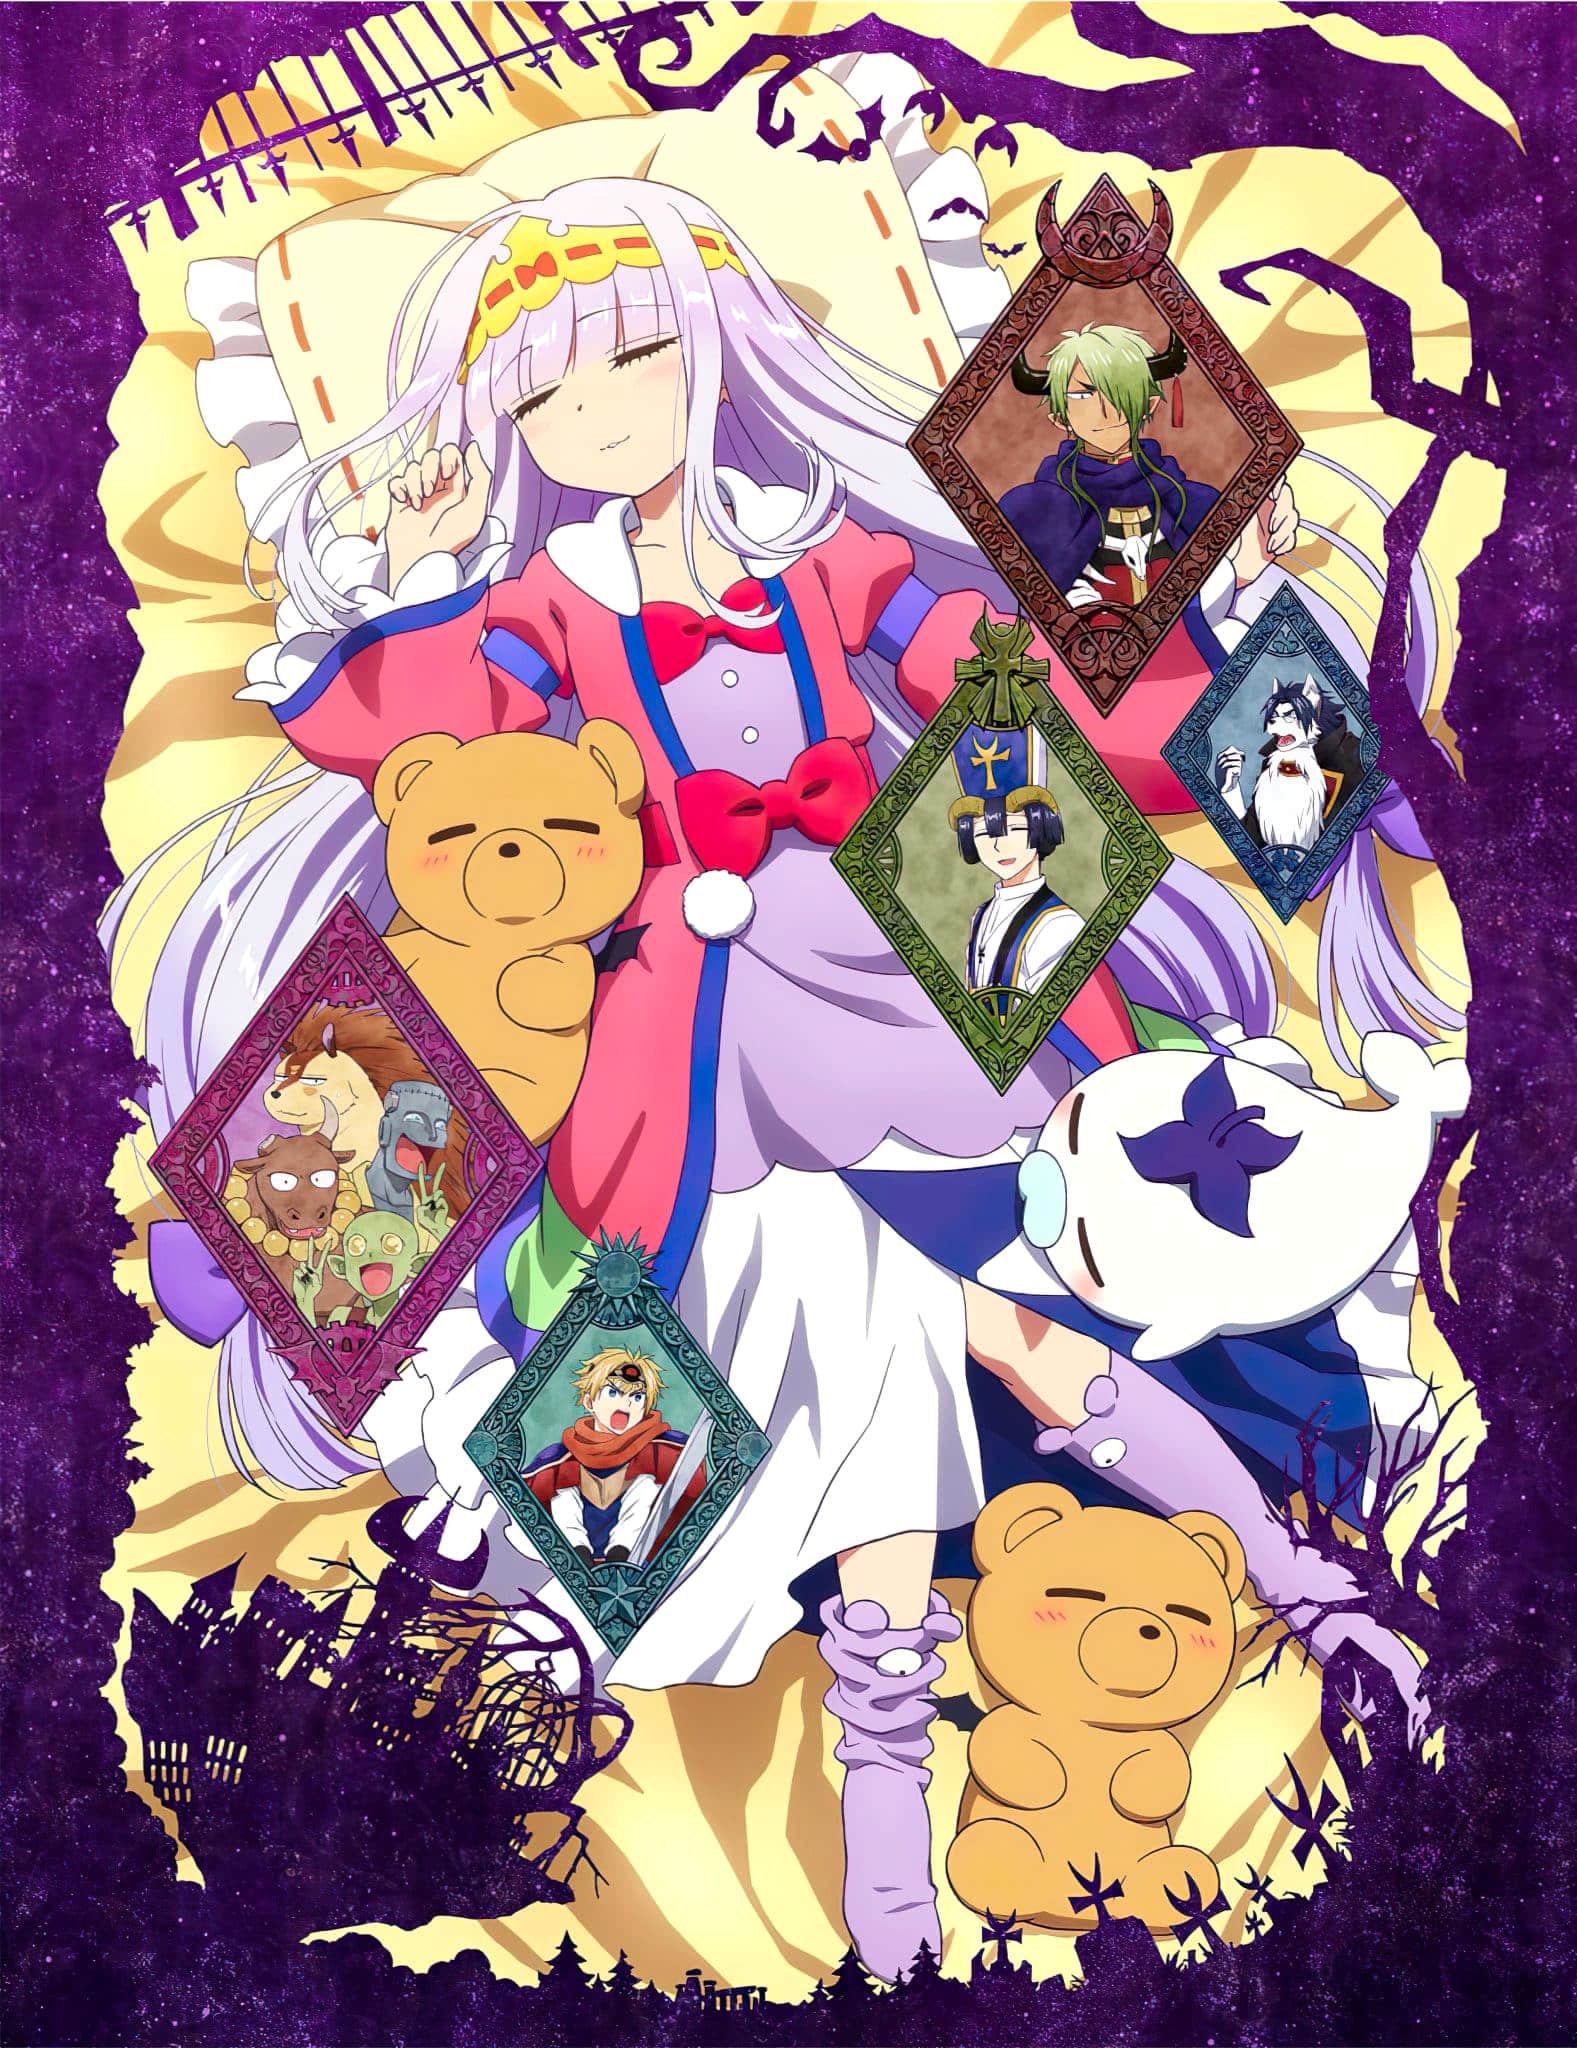 Annonce de Sleepy Princess in a Demon Castle parmi les animes automne 2020